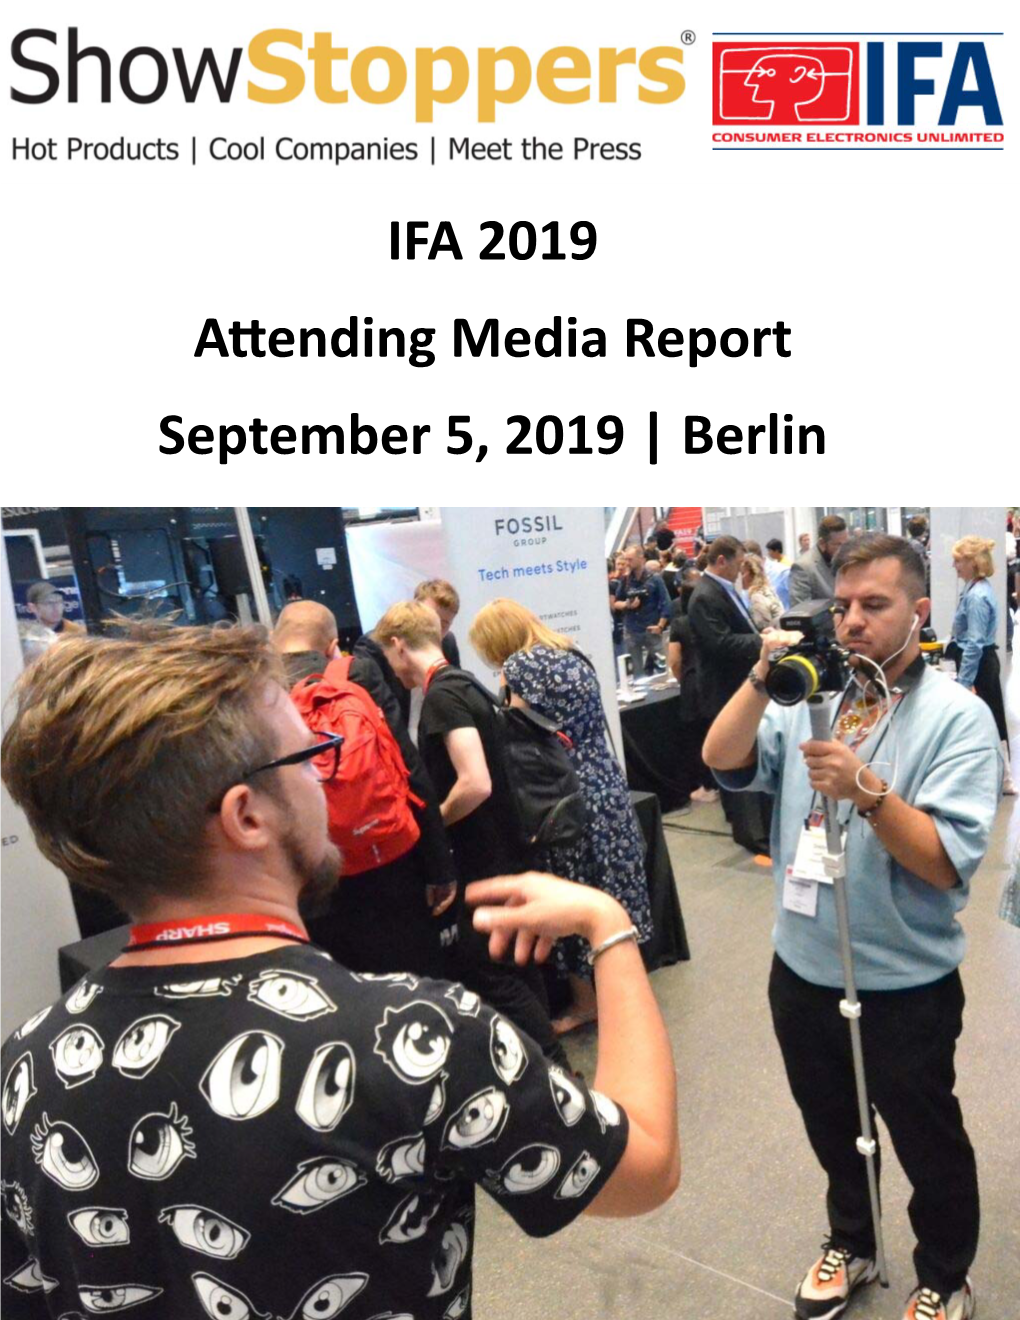 IFA 2019 a Ending Media Report September 5, 2019